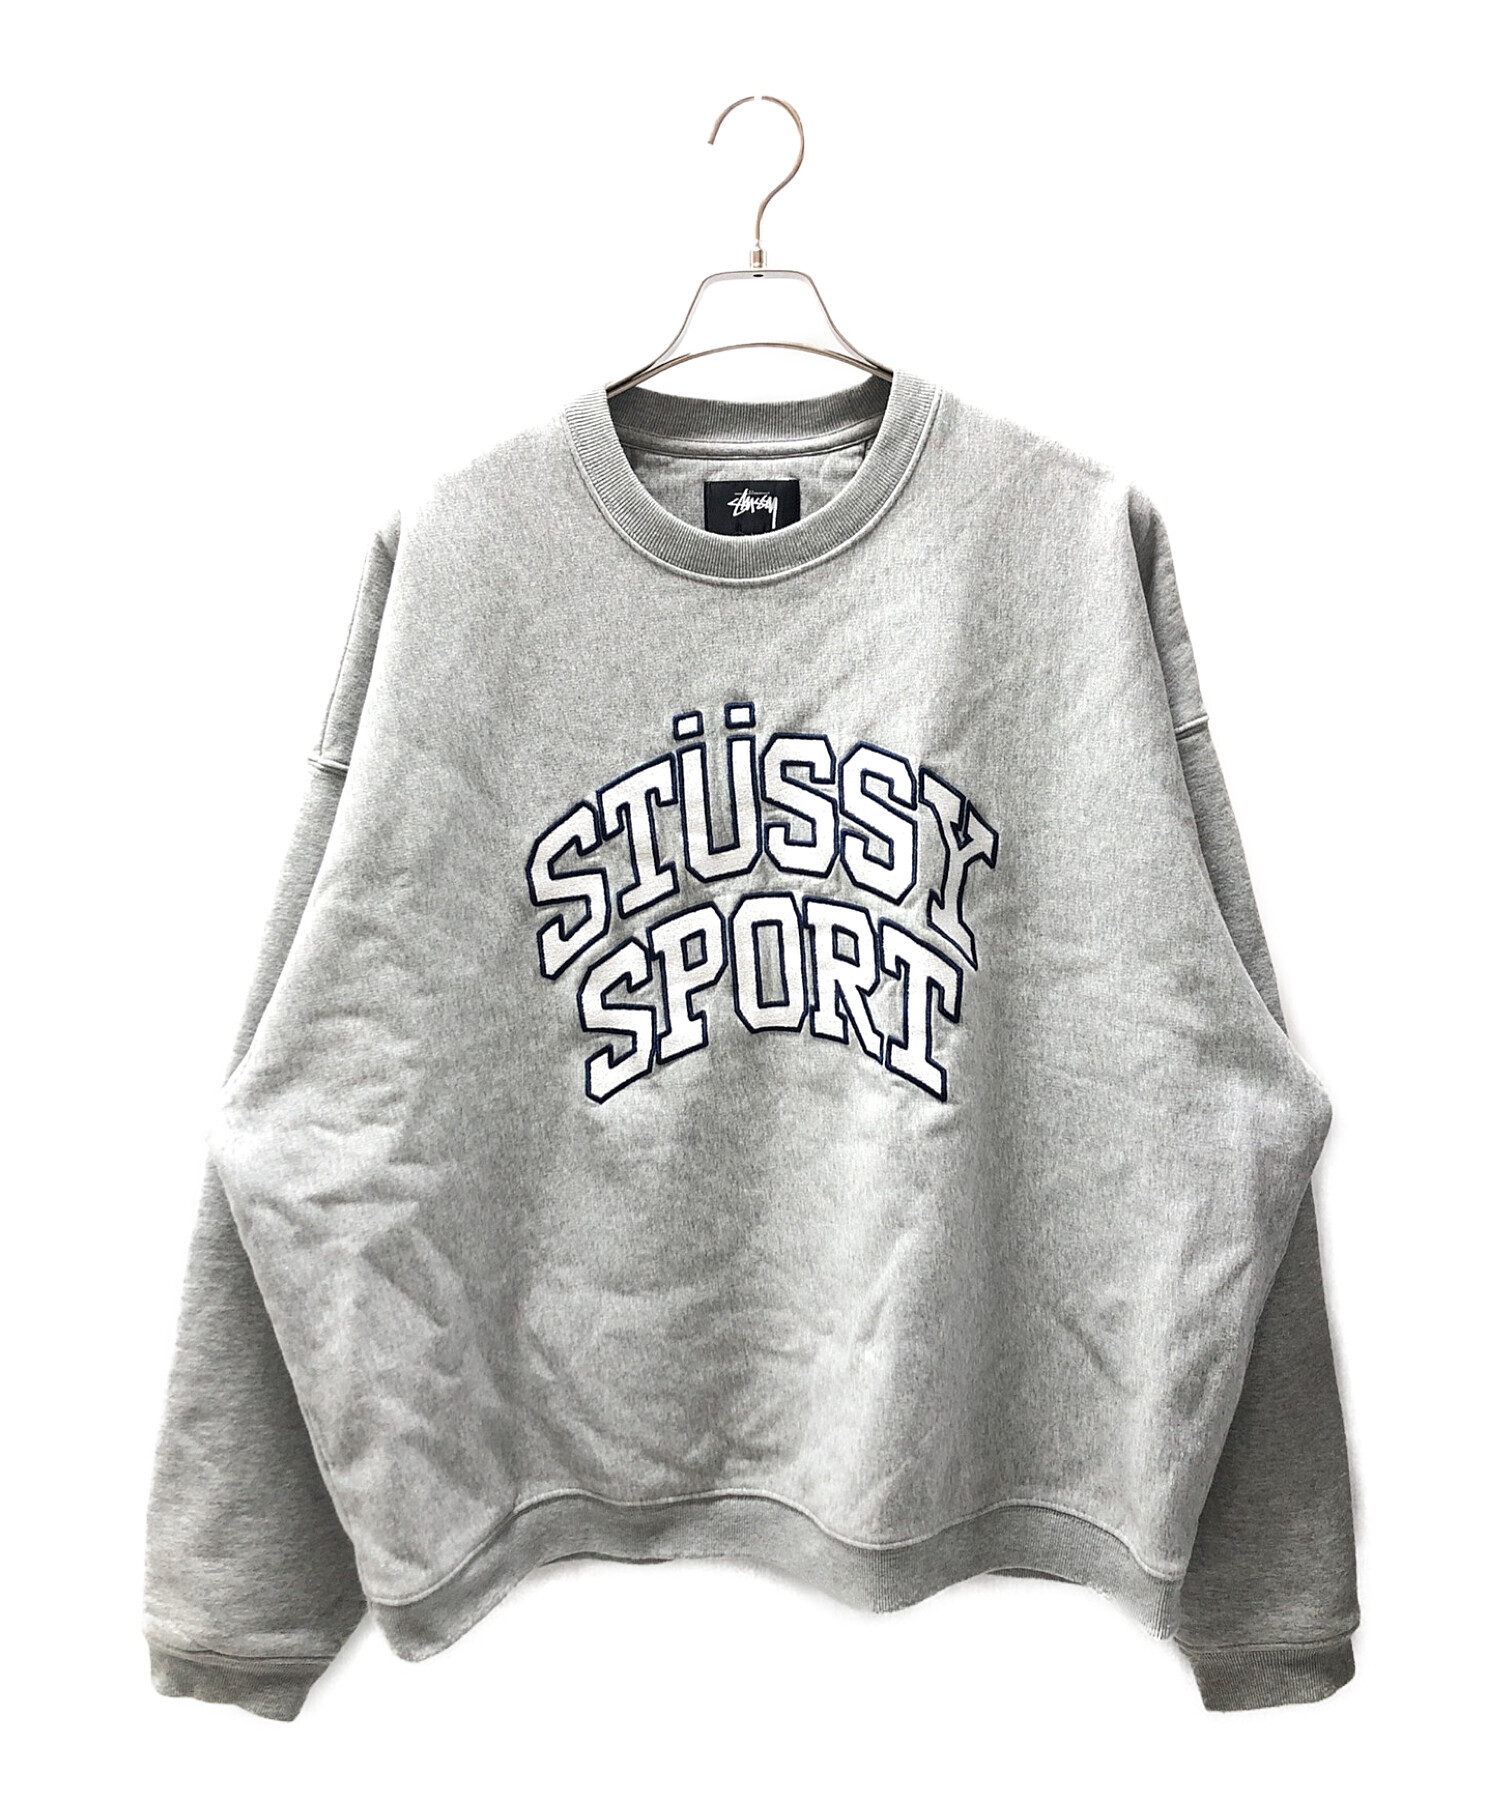 stussy sport (ステューシー スポーツ) ロゴスウェット グレー サイズ:XL